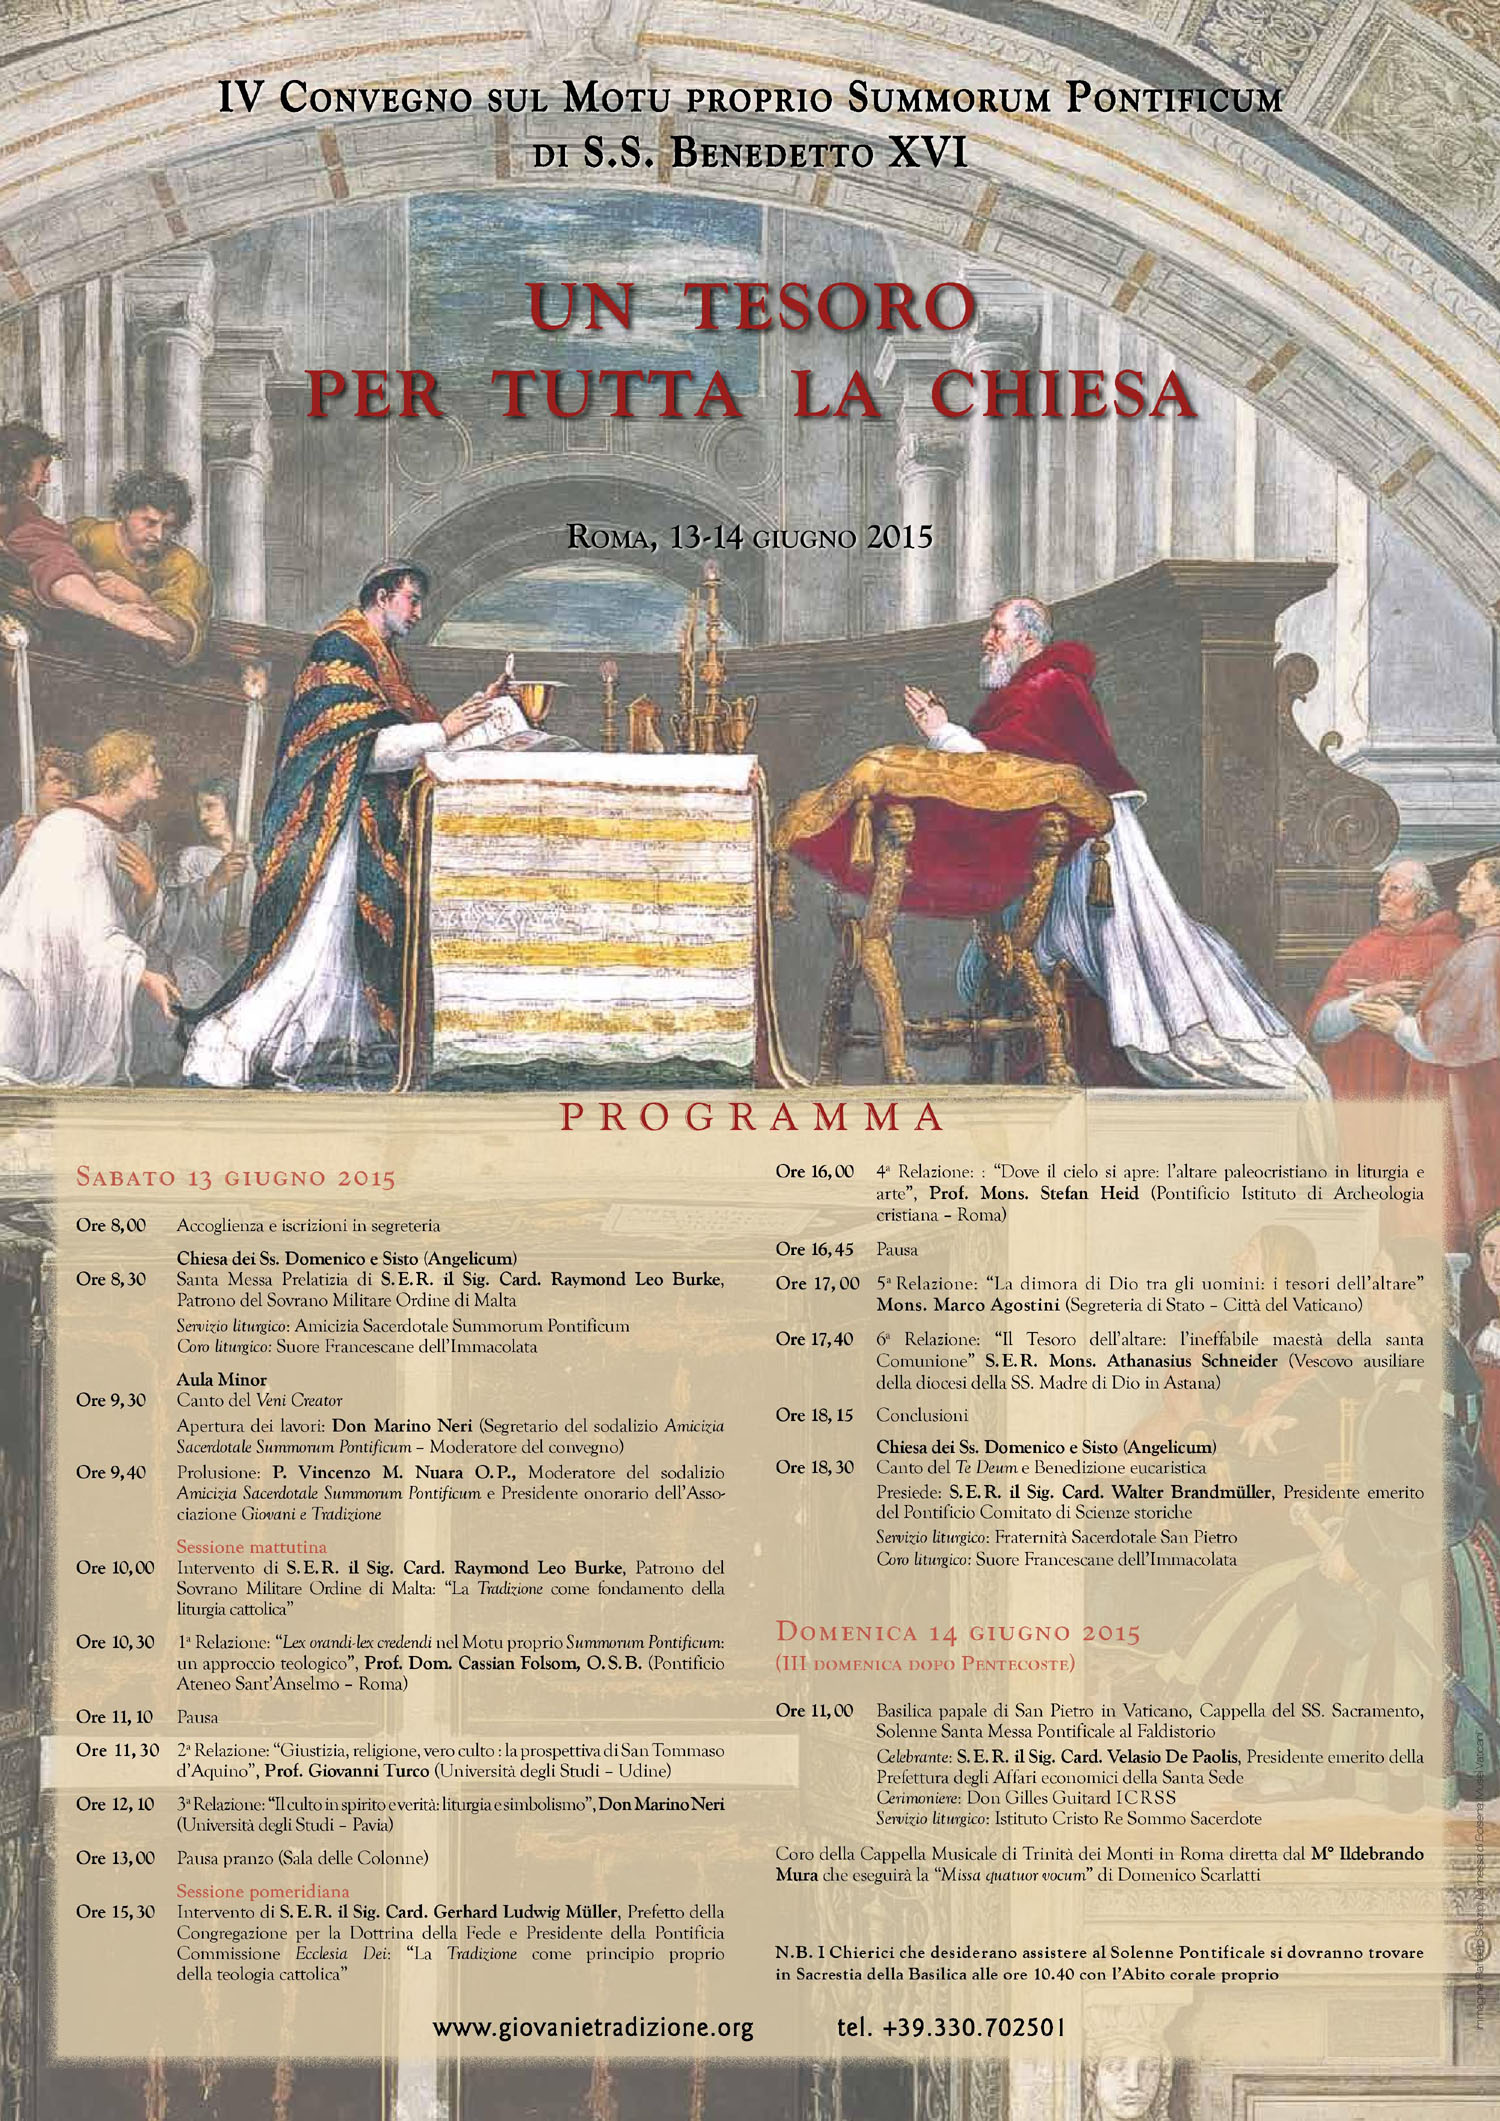 Locandina IV Convegno sul Summorum Pontificum, Roma 13-14 giugno 2015